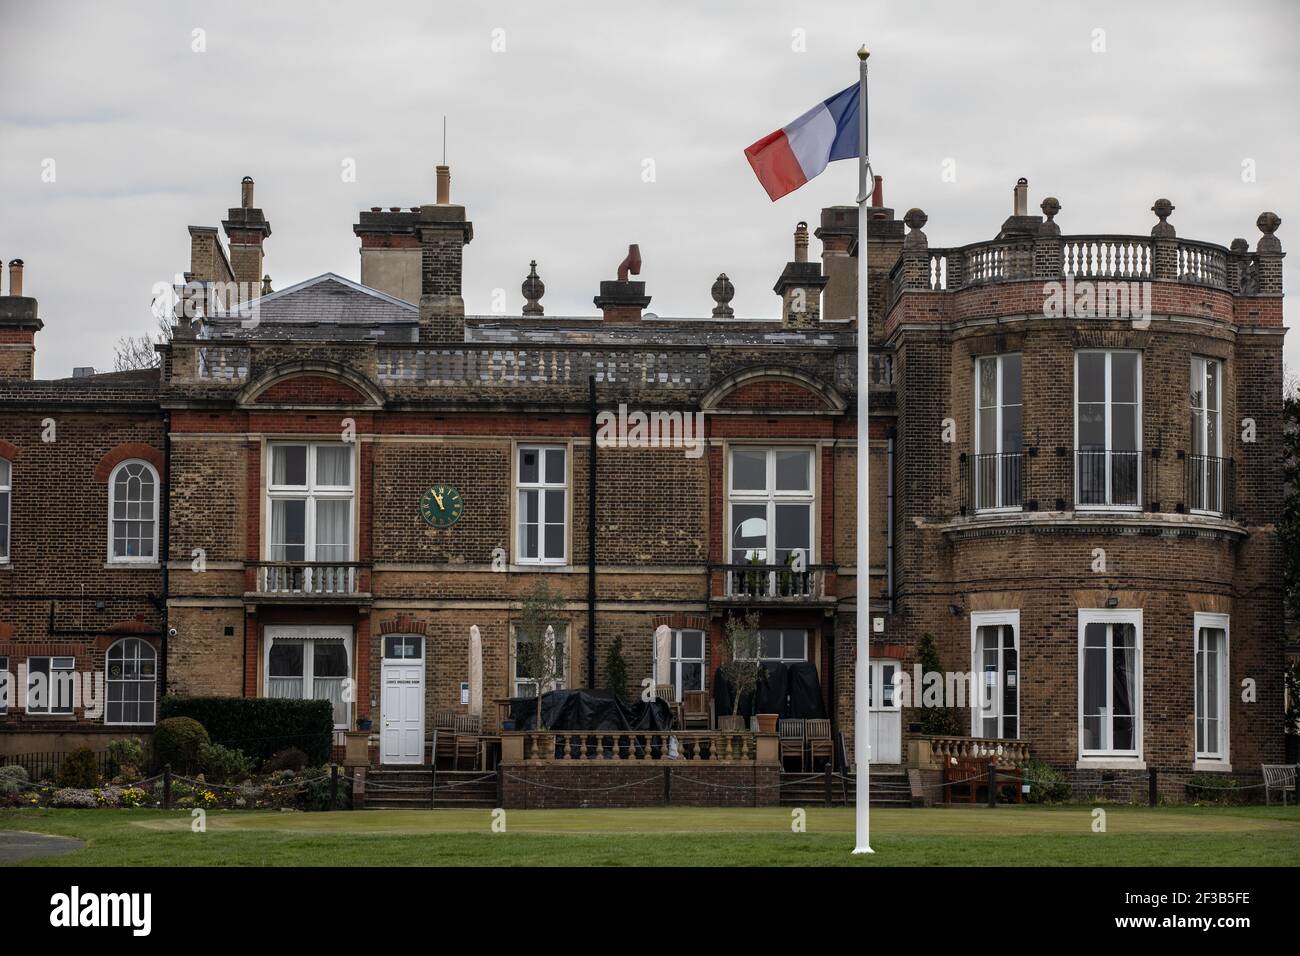 Bandiera nazionale francese sull'albero che celebra il 150° anniversario da Napoleone III, la famiglia imperiale francese in esilio arrivò a Camden Place, Kent Foto Stock